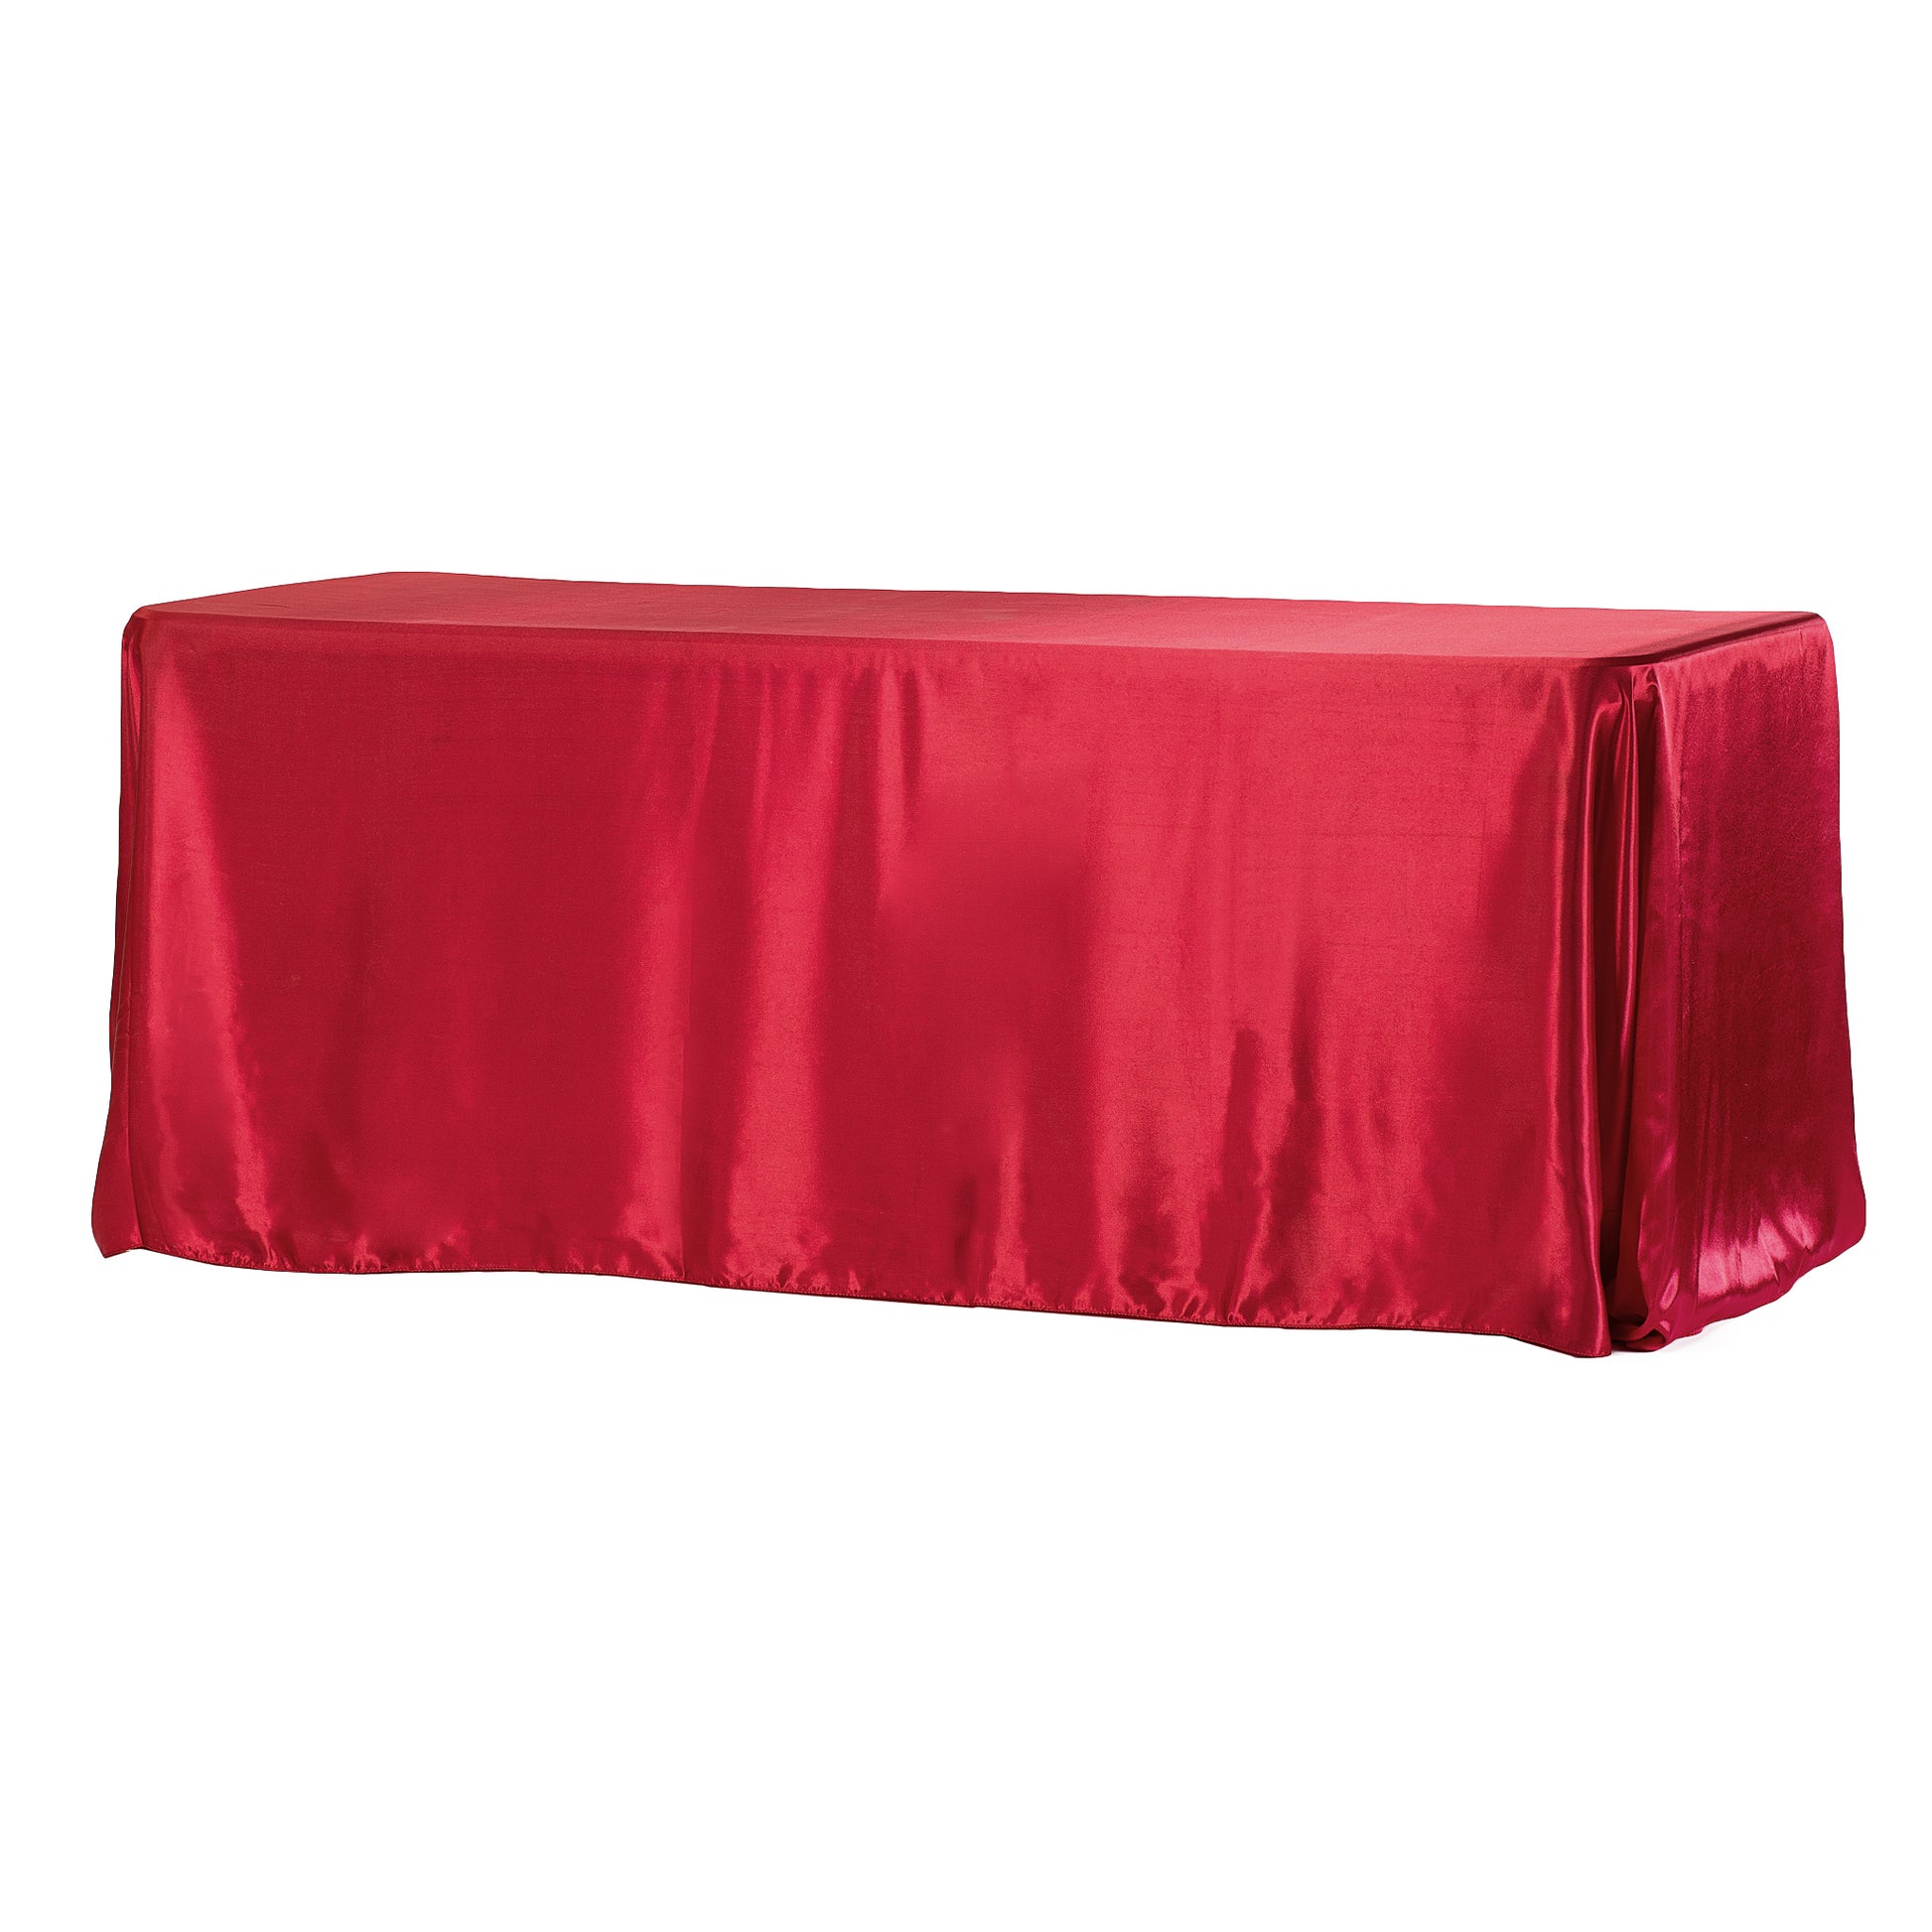 90"x156" Rectangular Satin Tablecloth - Apple Red